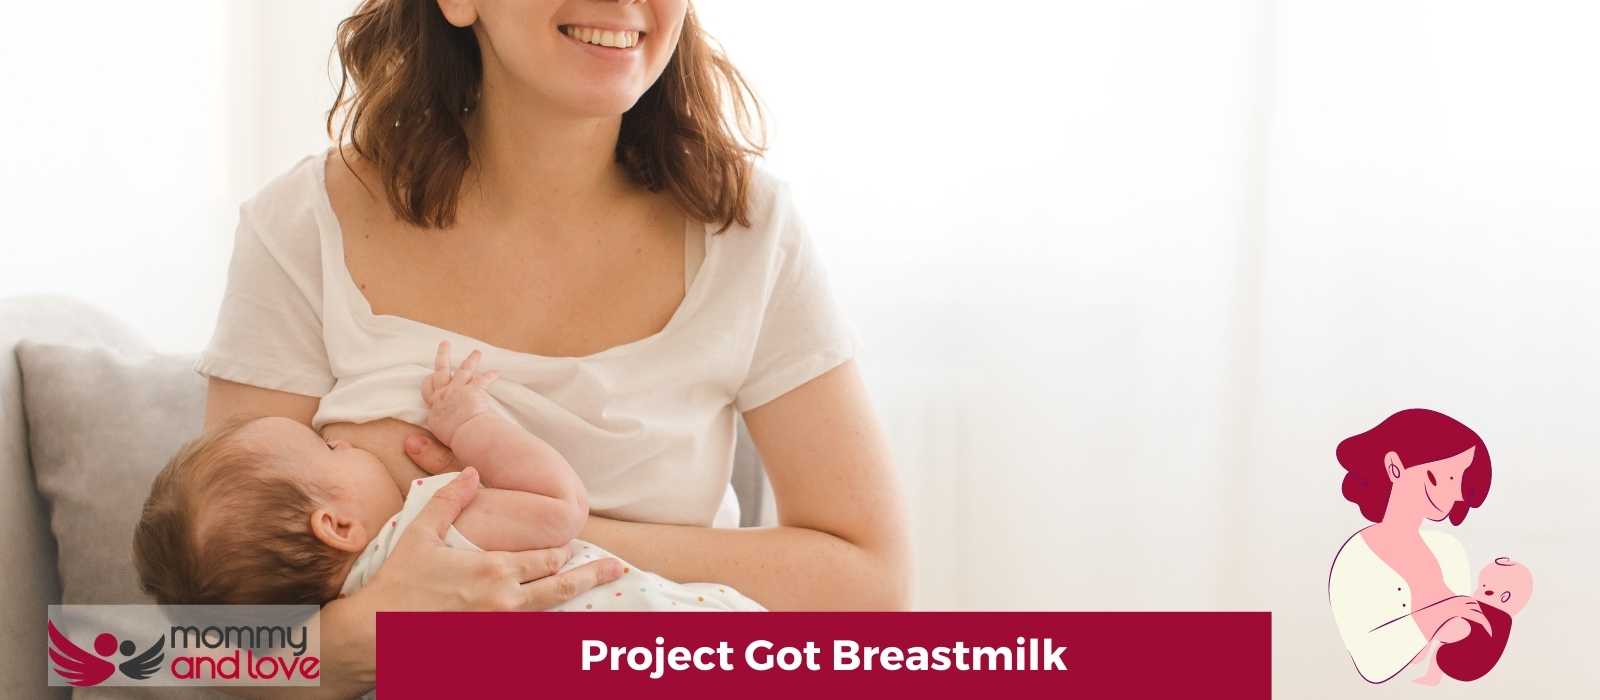 Project Got Breastmilk